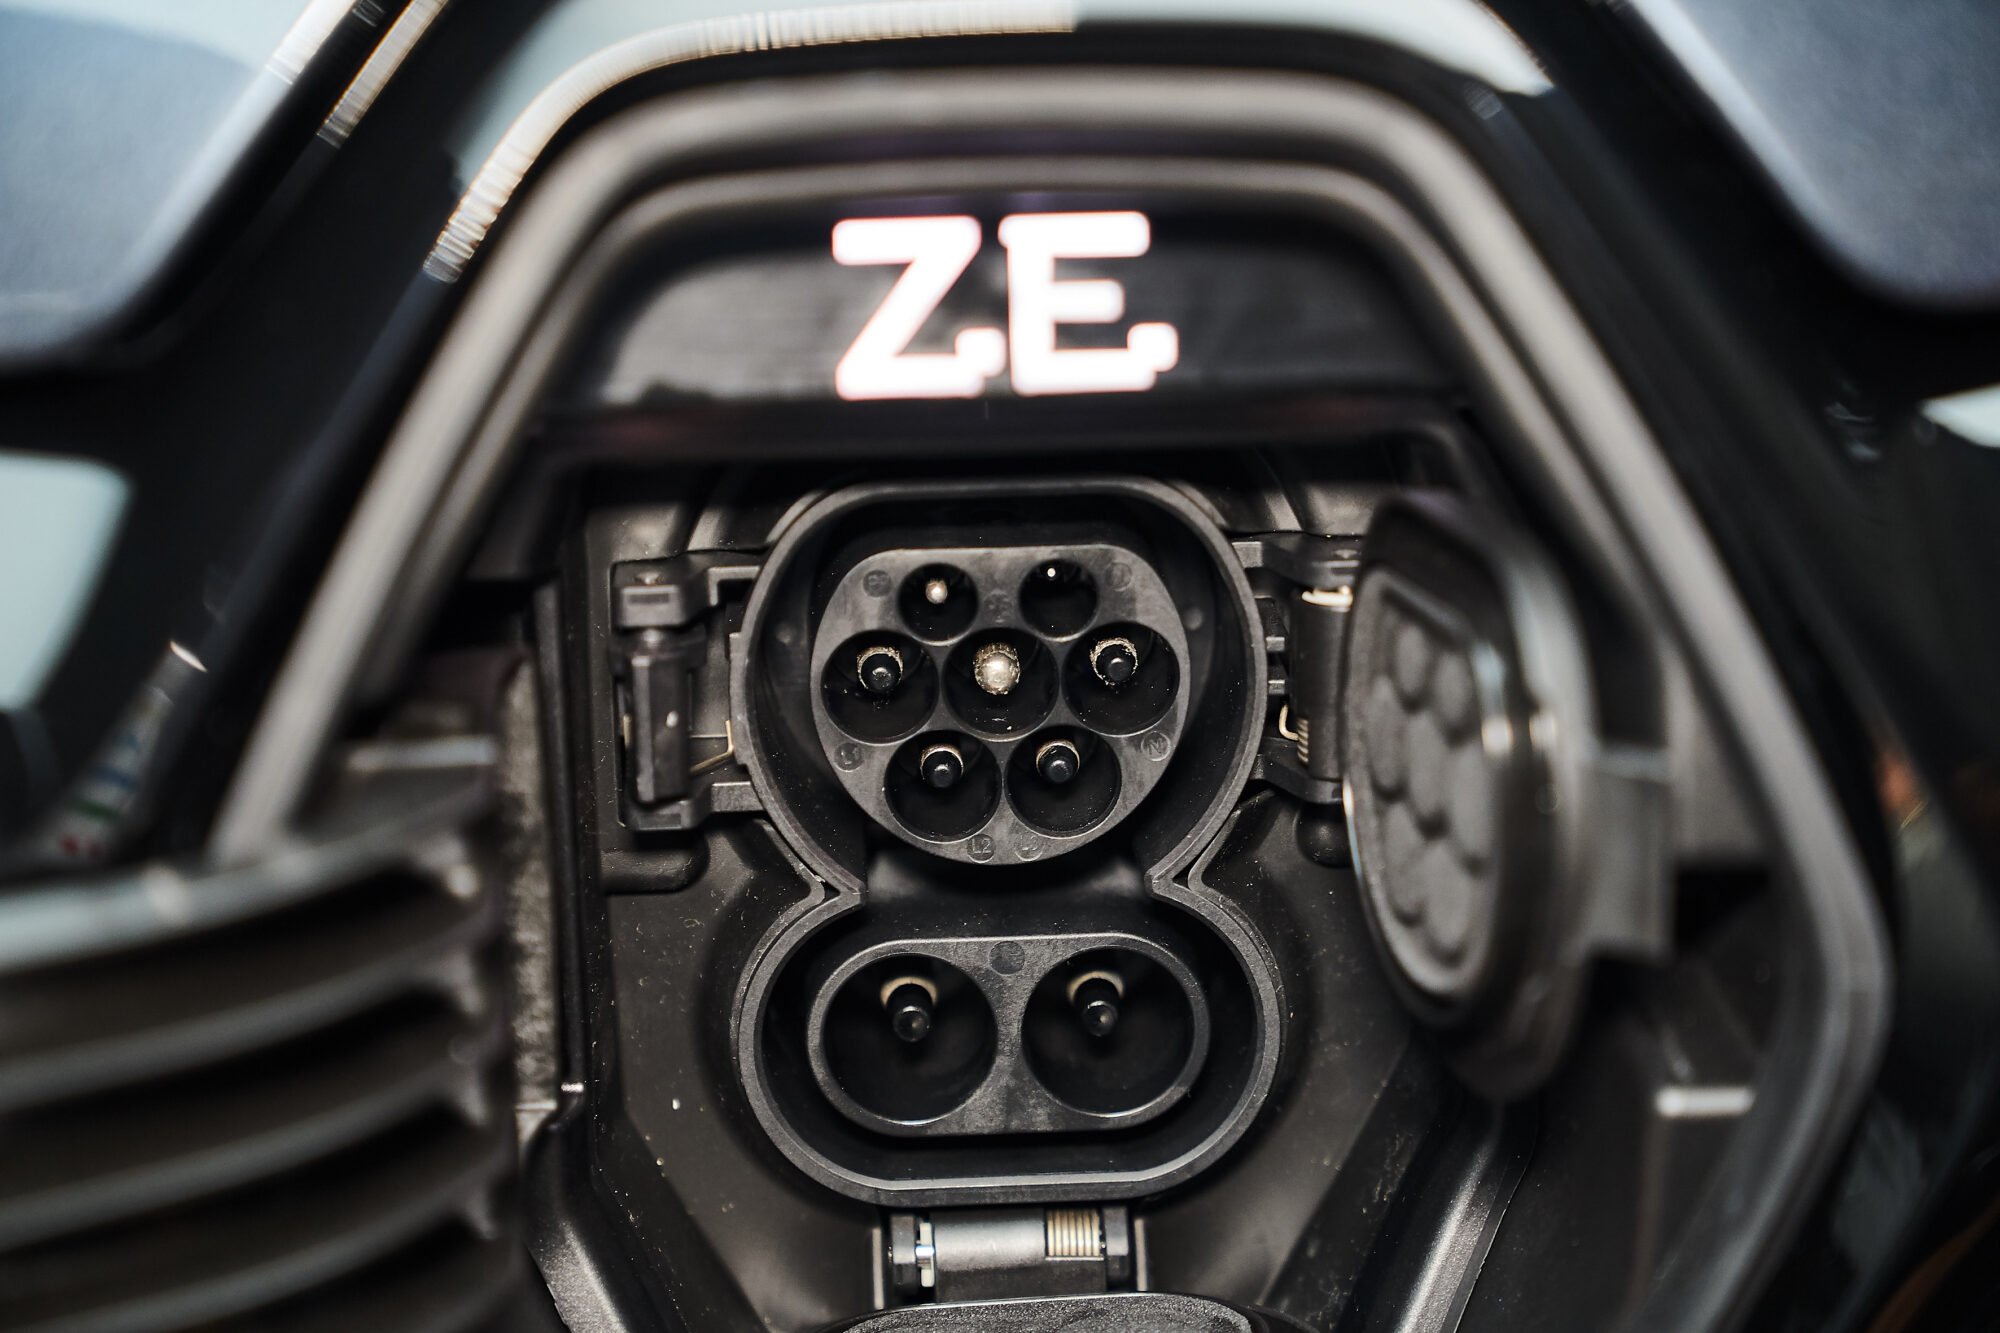 Nuova ZOE - Il piacere della guida 100 % elettrica assume una nuova dimensione